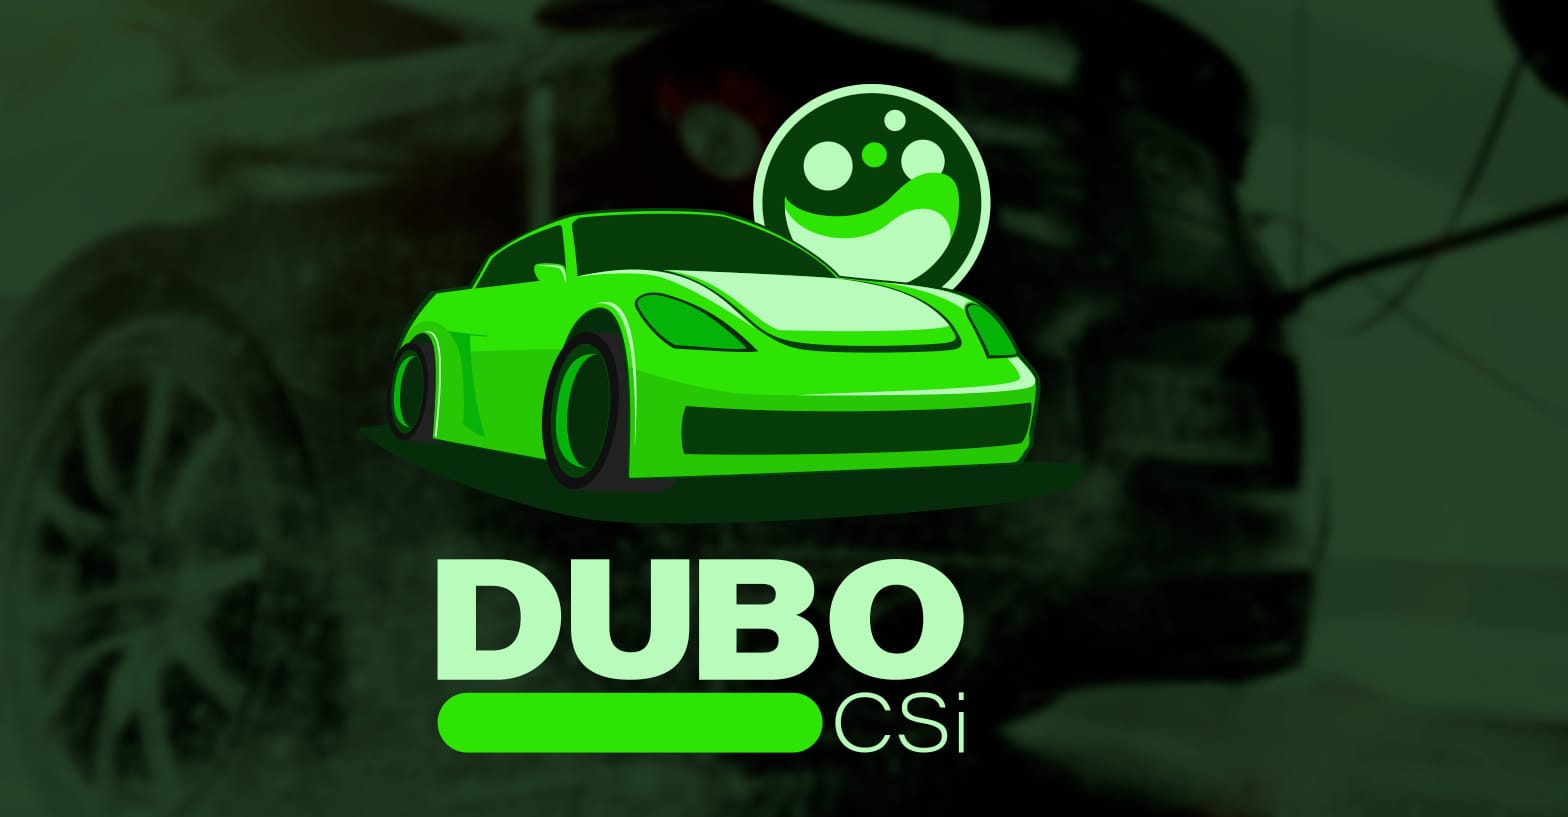 Dubo CSi Logo, vertical with car on dark